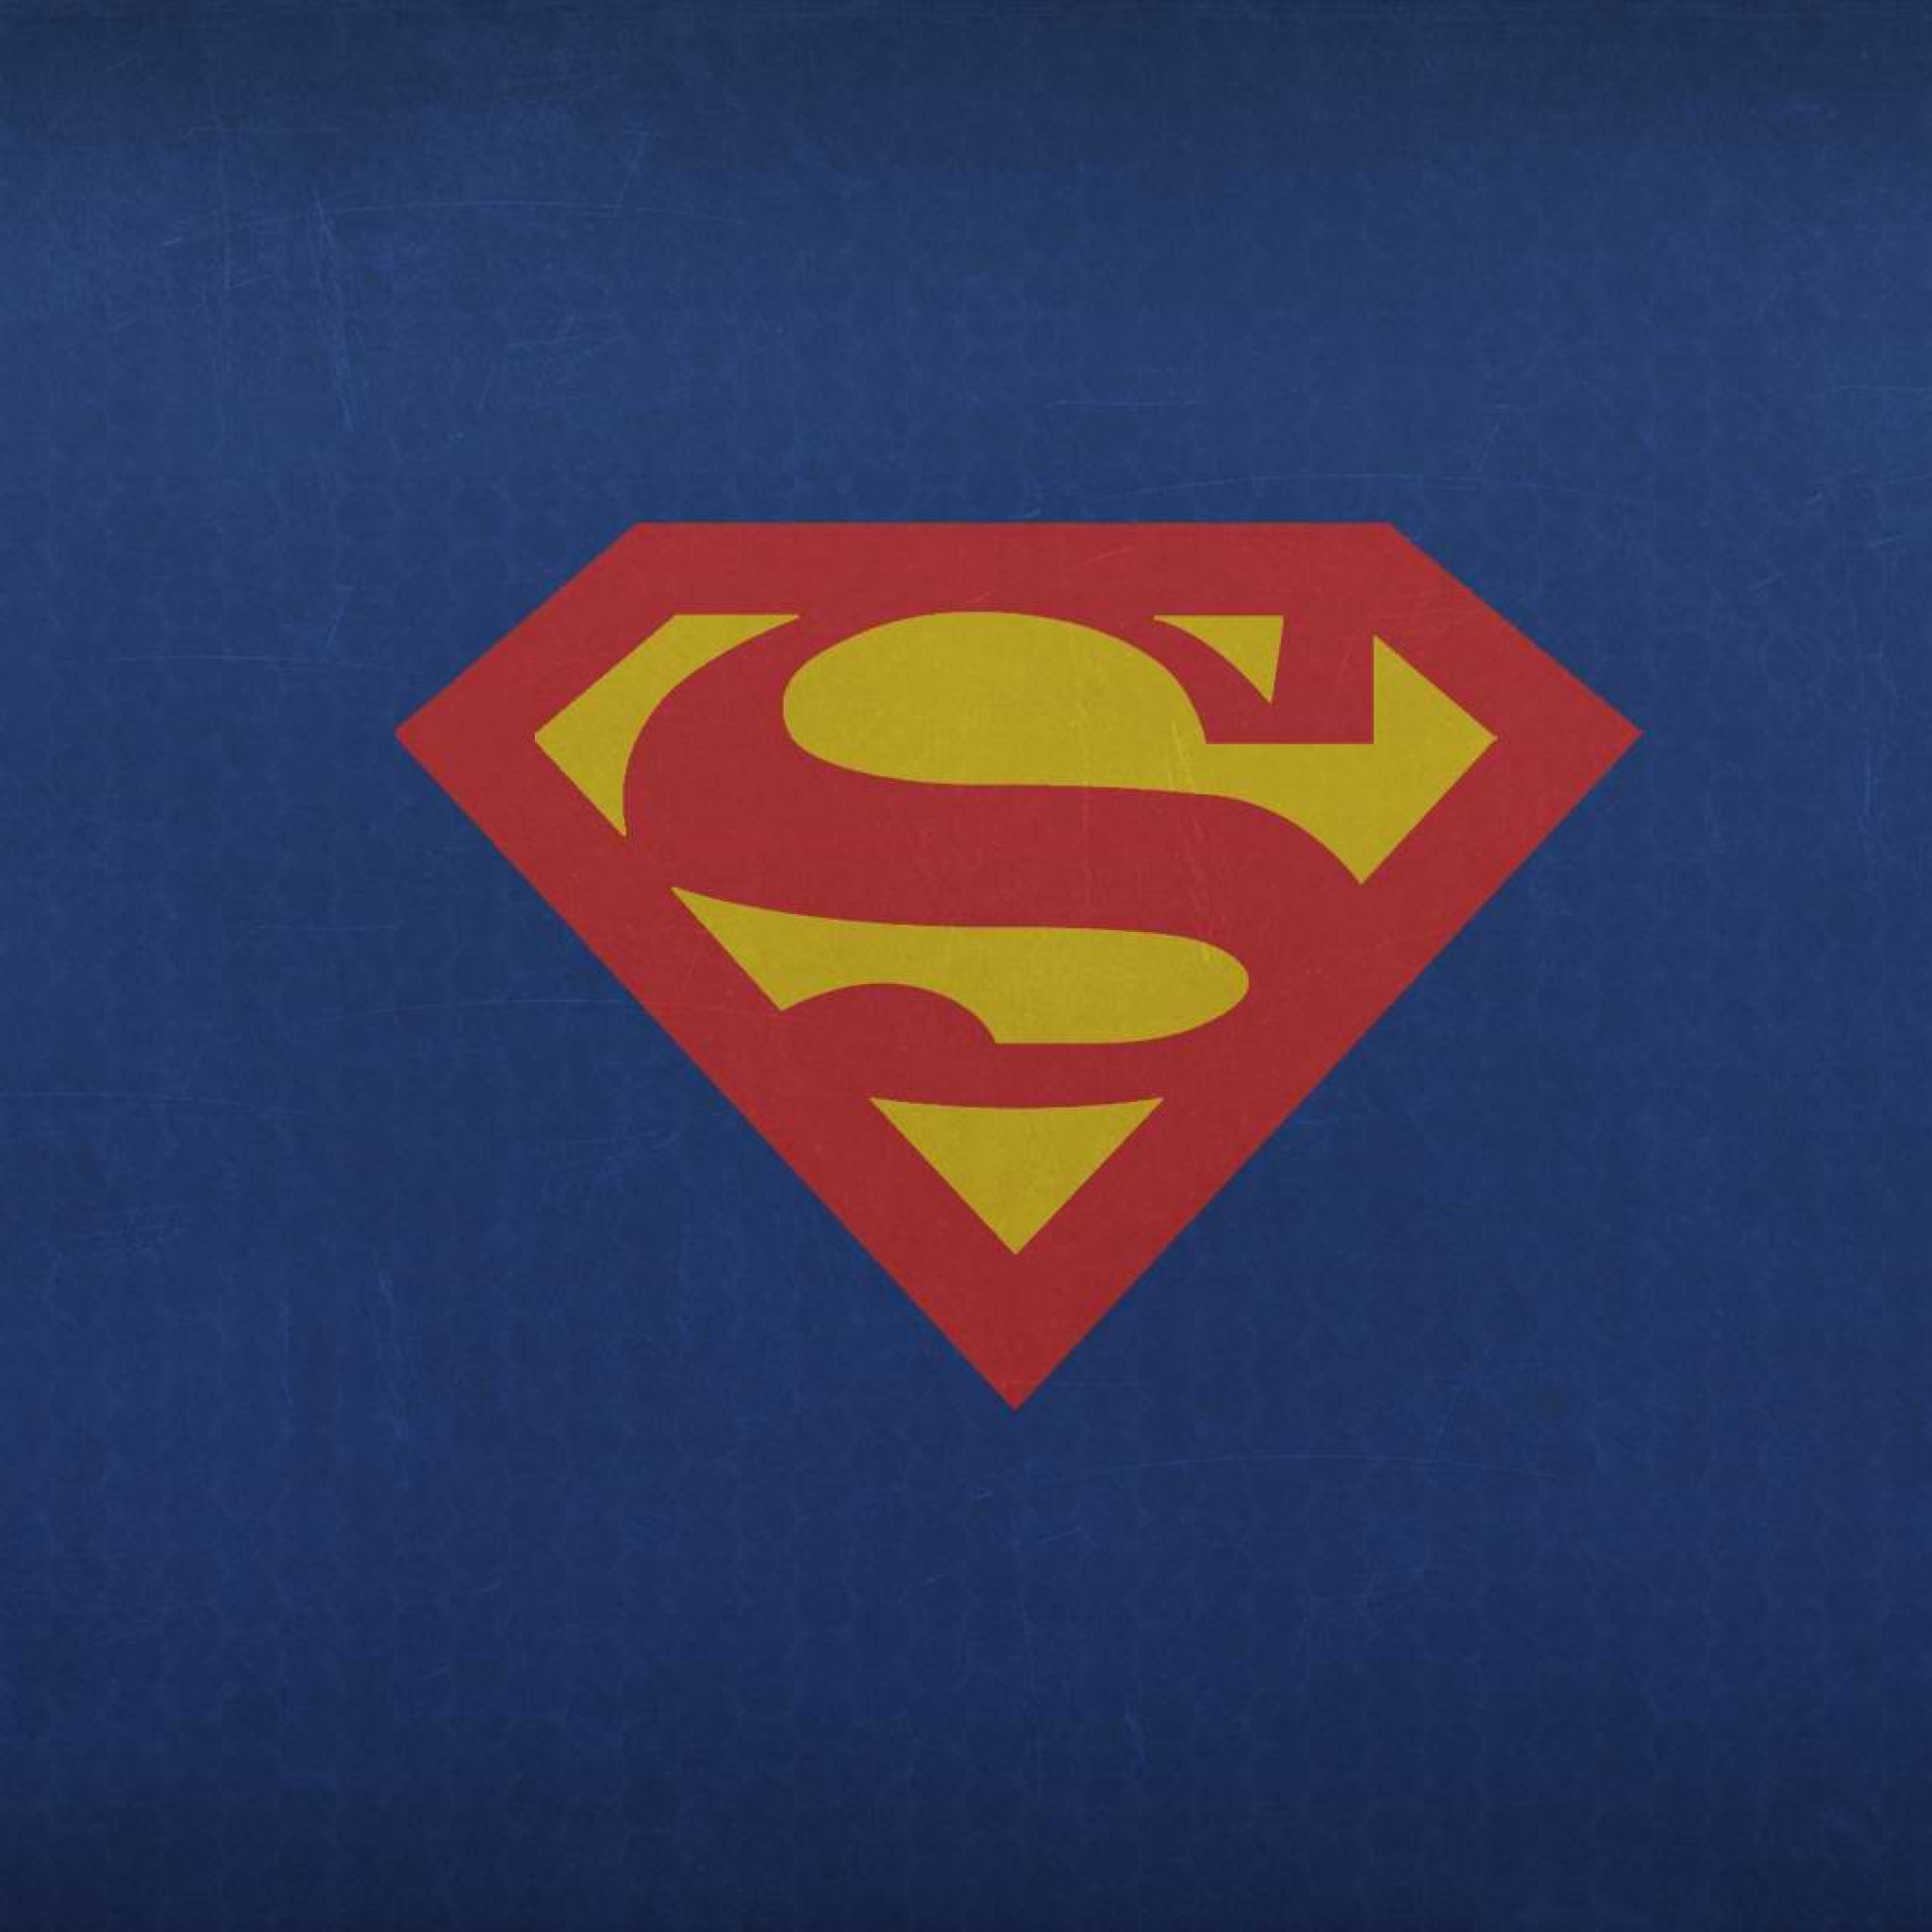 スーパーマン Logo 洋画の壁紙 Ipad タブレット壁紙ギャラリー